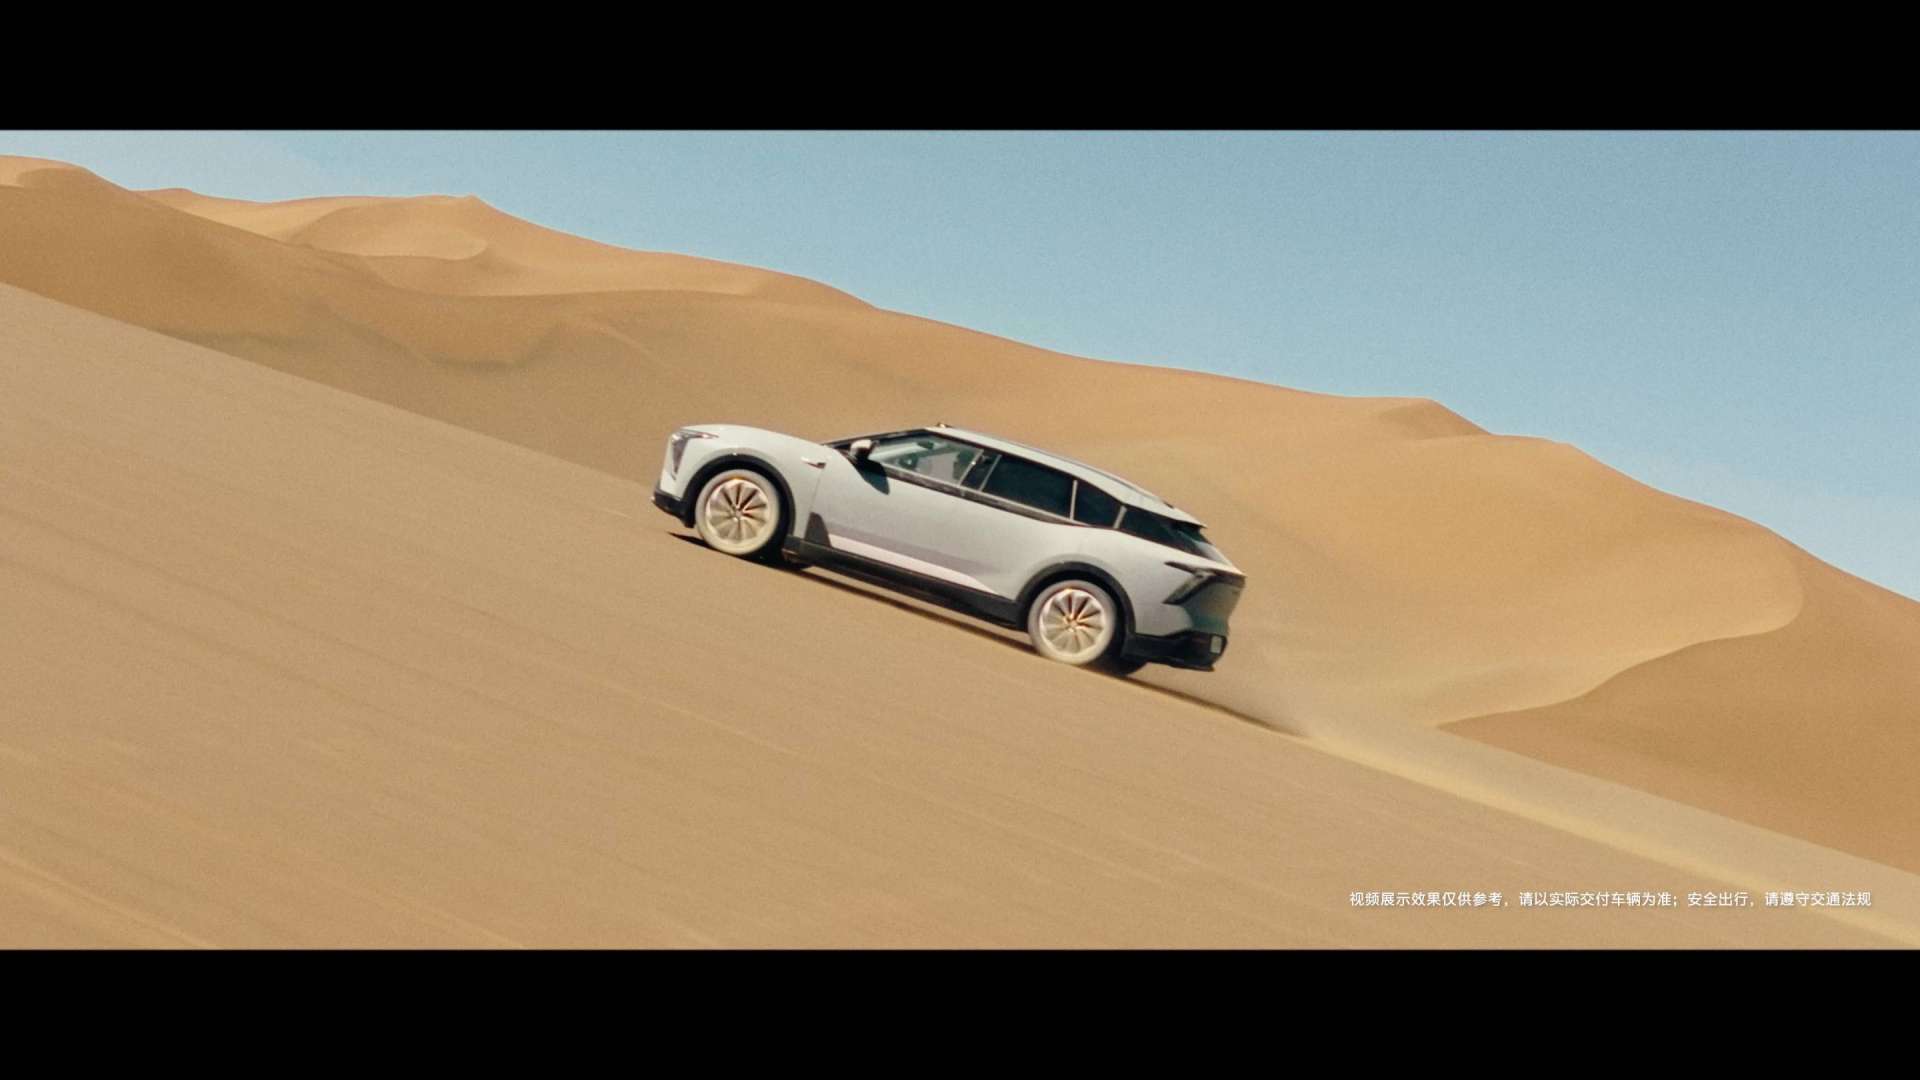 HiPhi Y挑战高温极端环境测试，驰骋沙漠，展现极致操控性能！#高合汽车